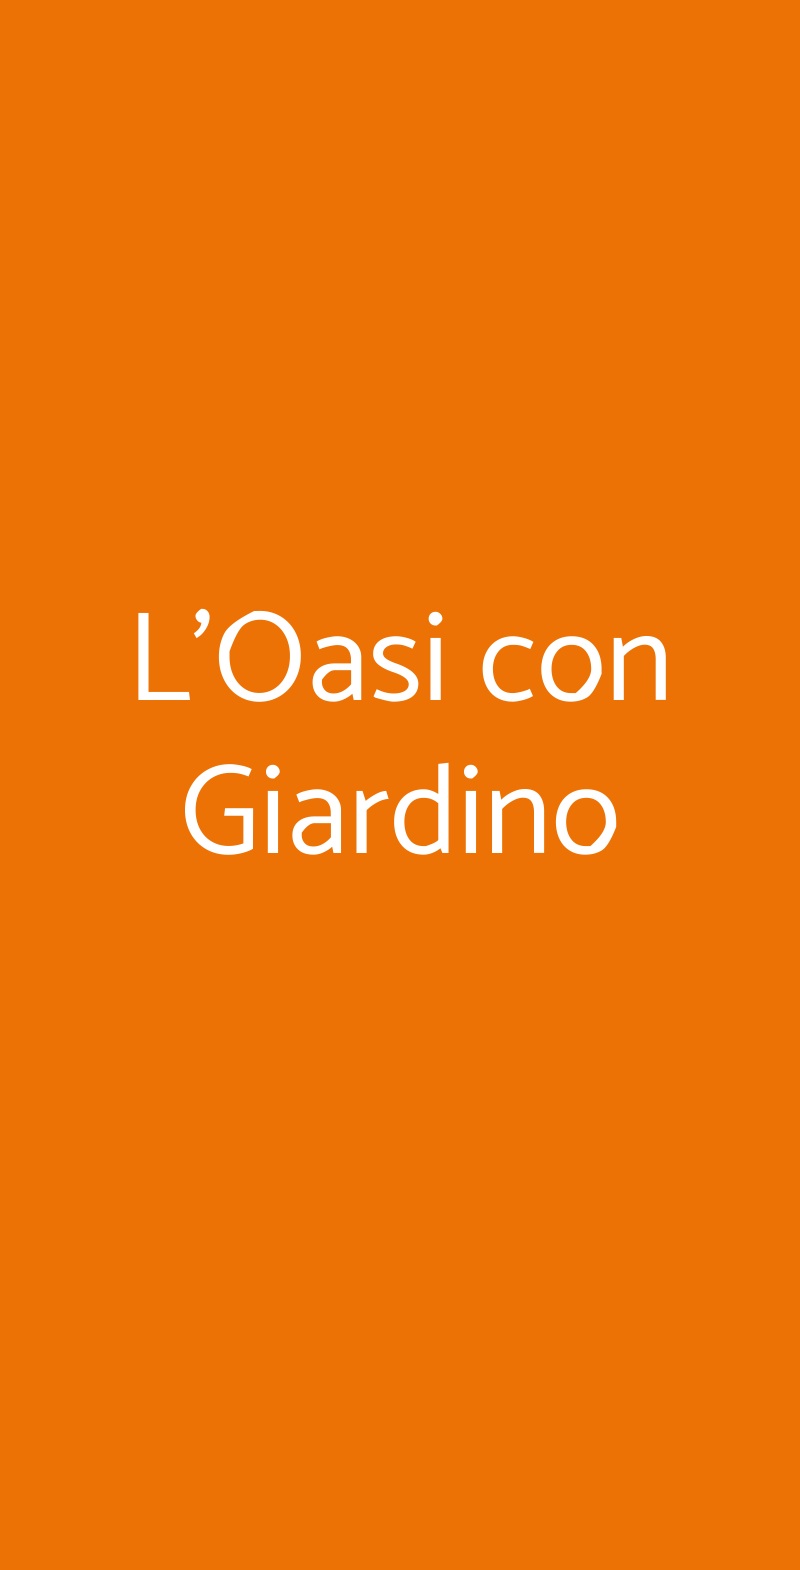 L'Oasi con Giardino Milano menù 1 pagina